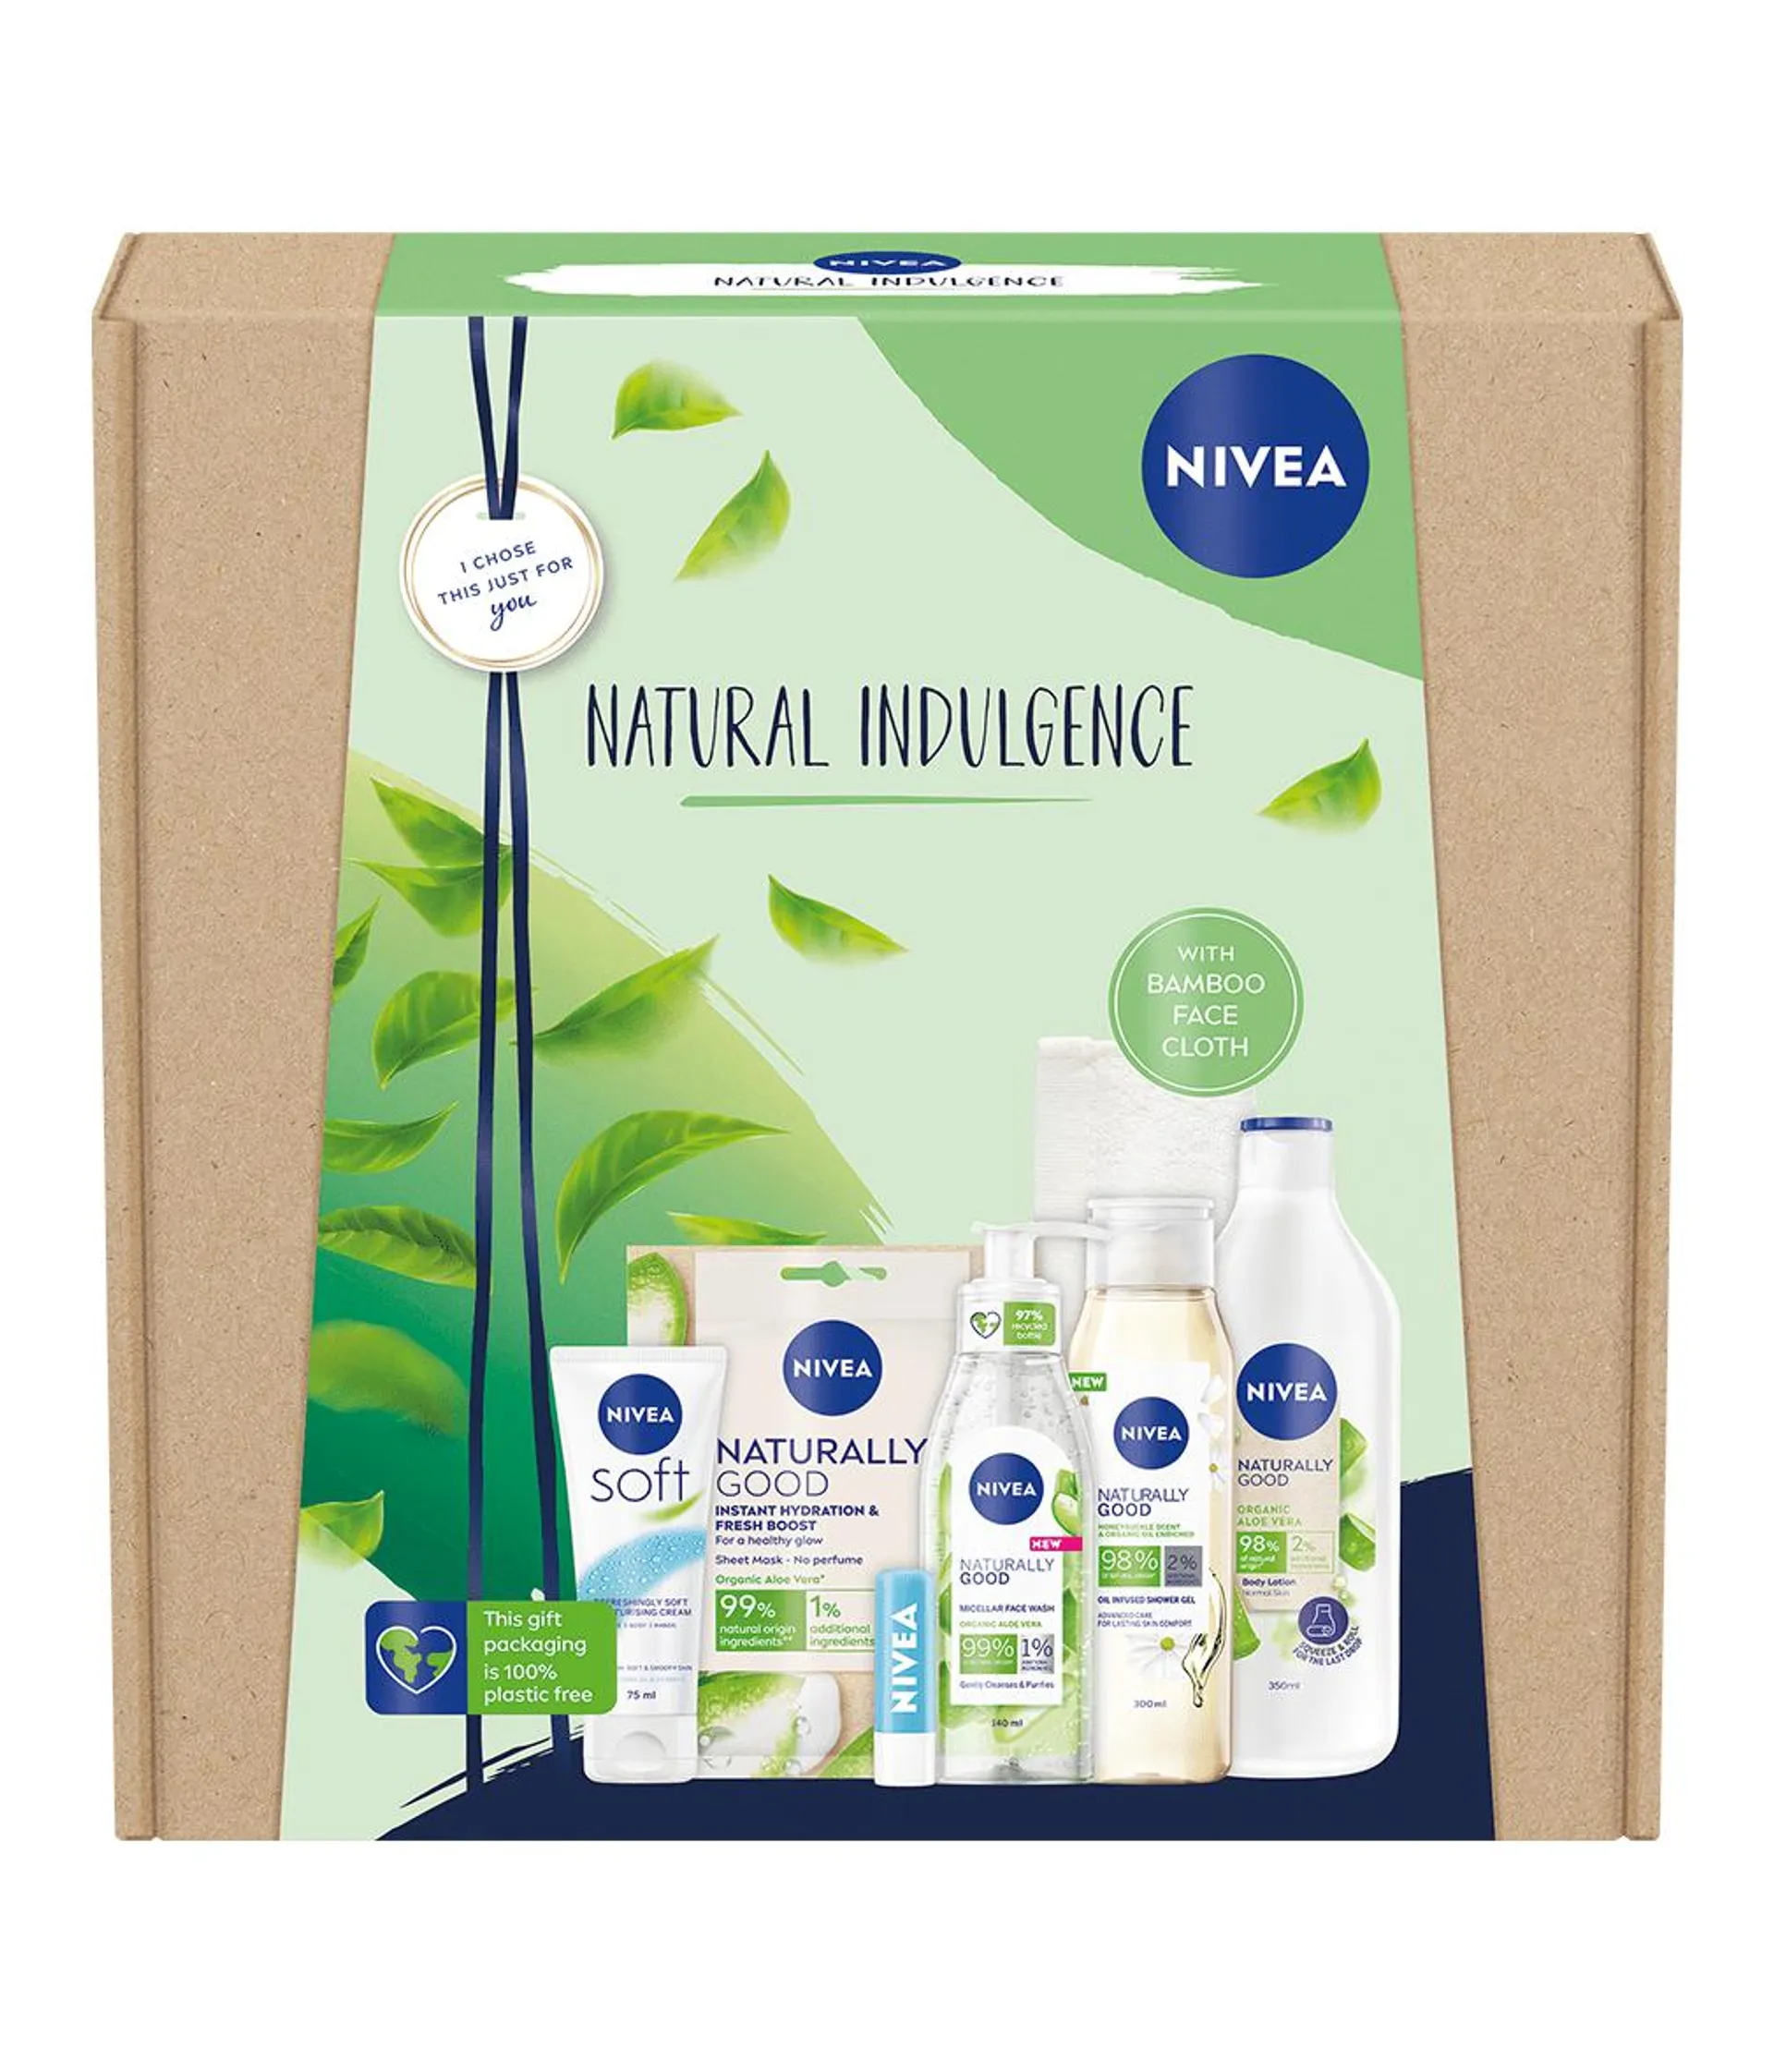 NIVEA Natural Indulgence